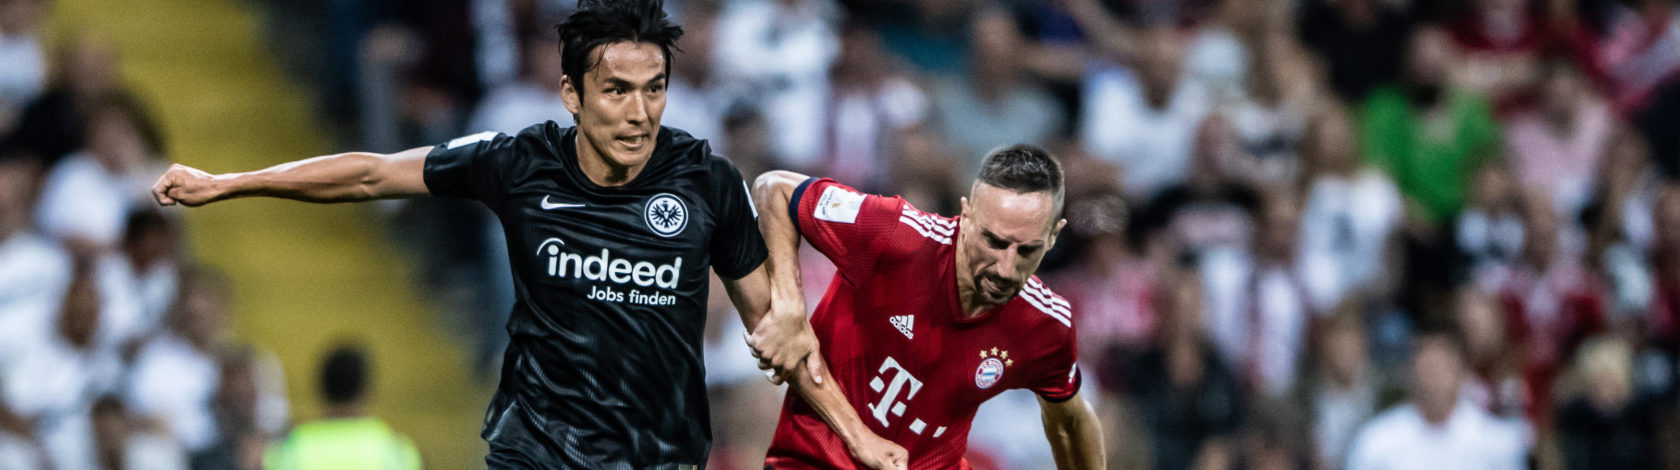 Eintracht Frankfurt v Bayern Muenchen &#8211; DFL Supercup 2018